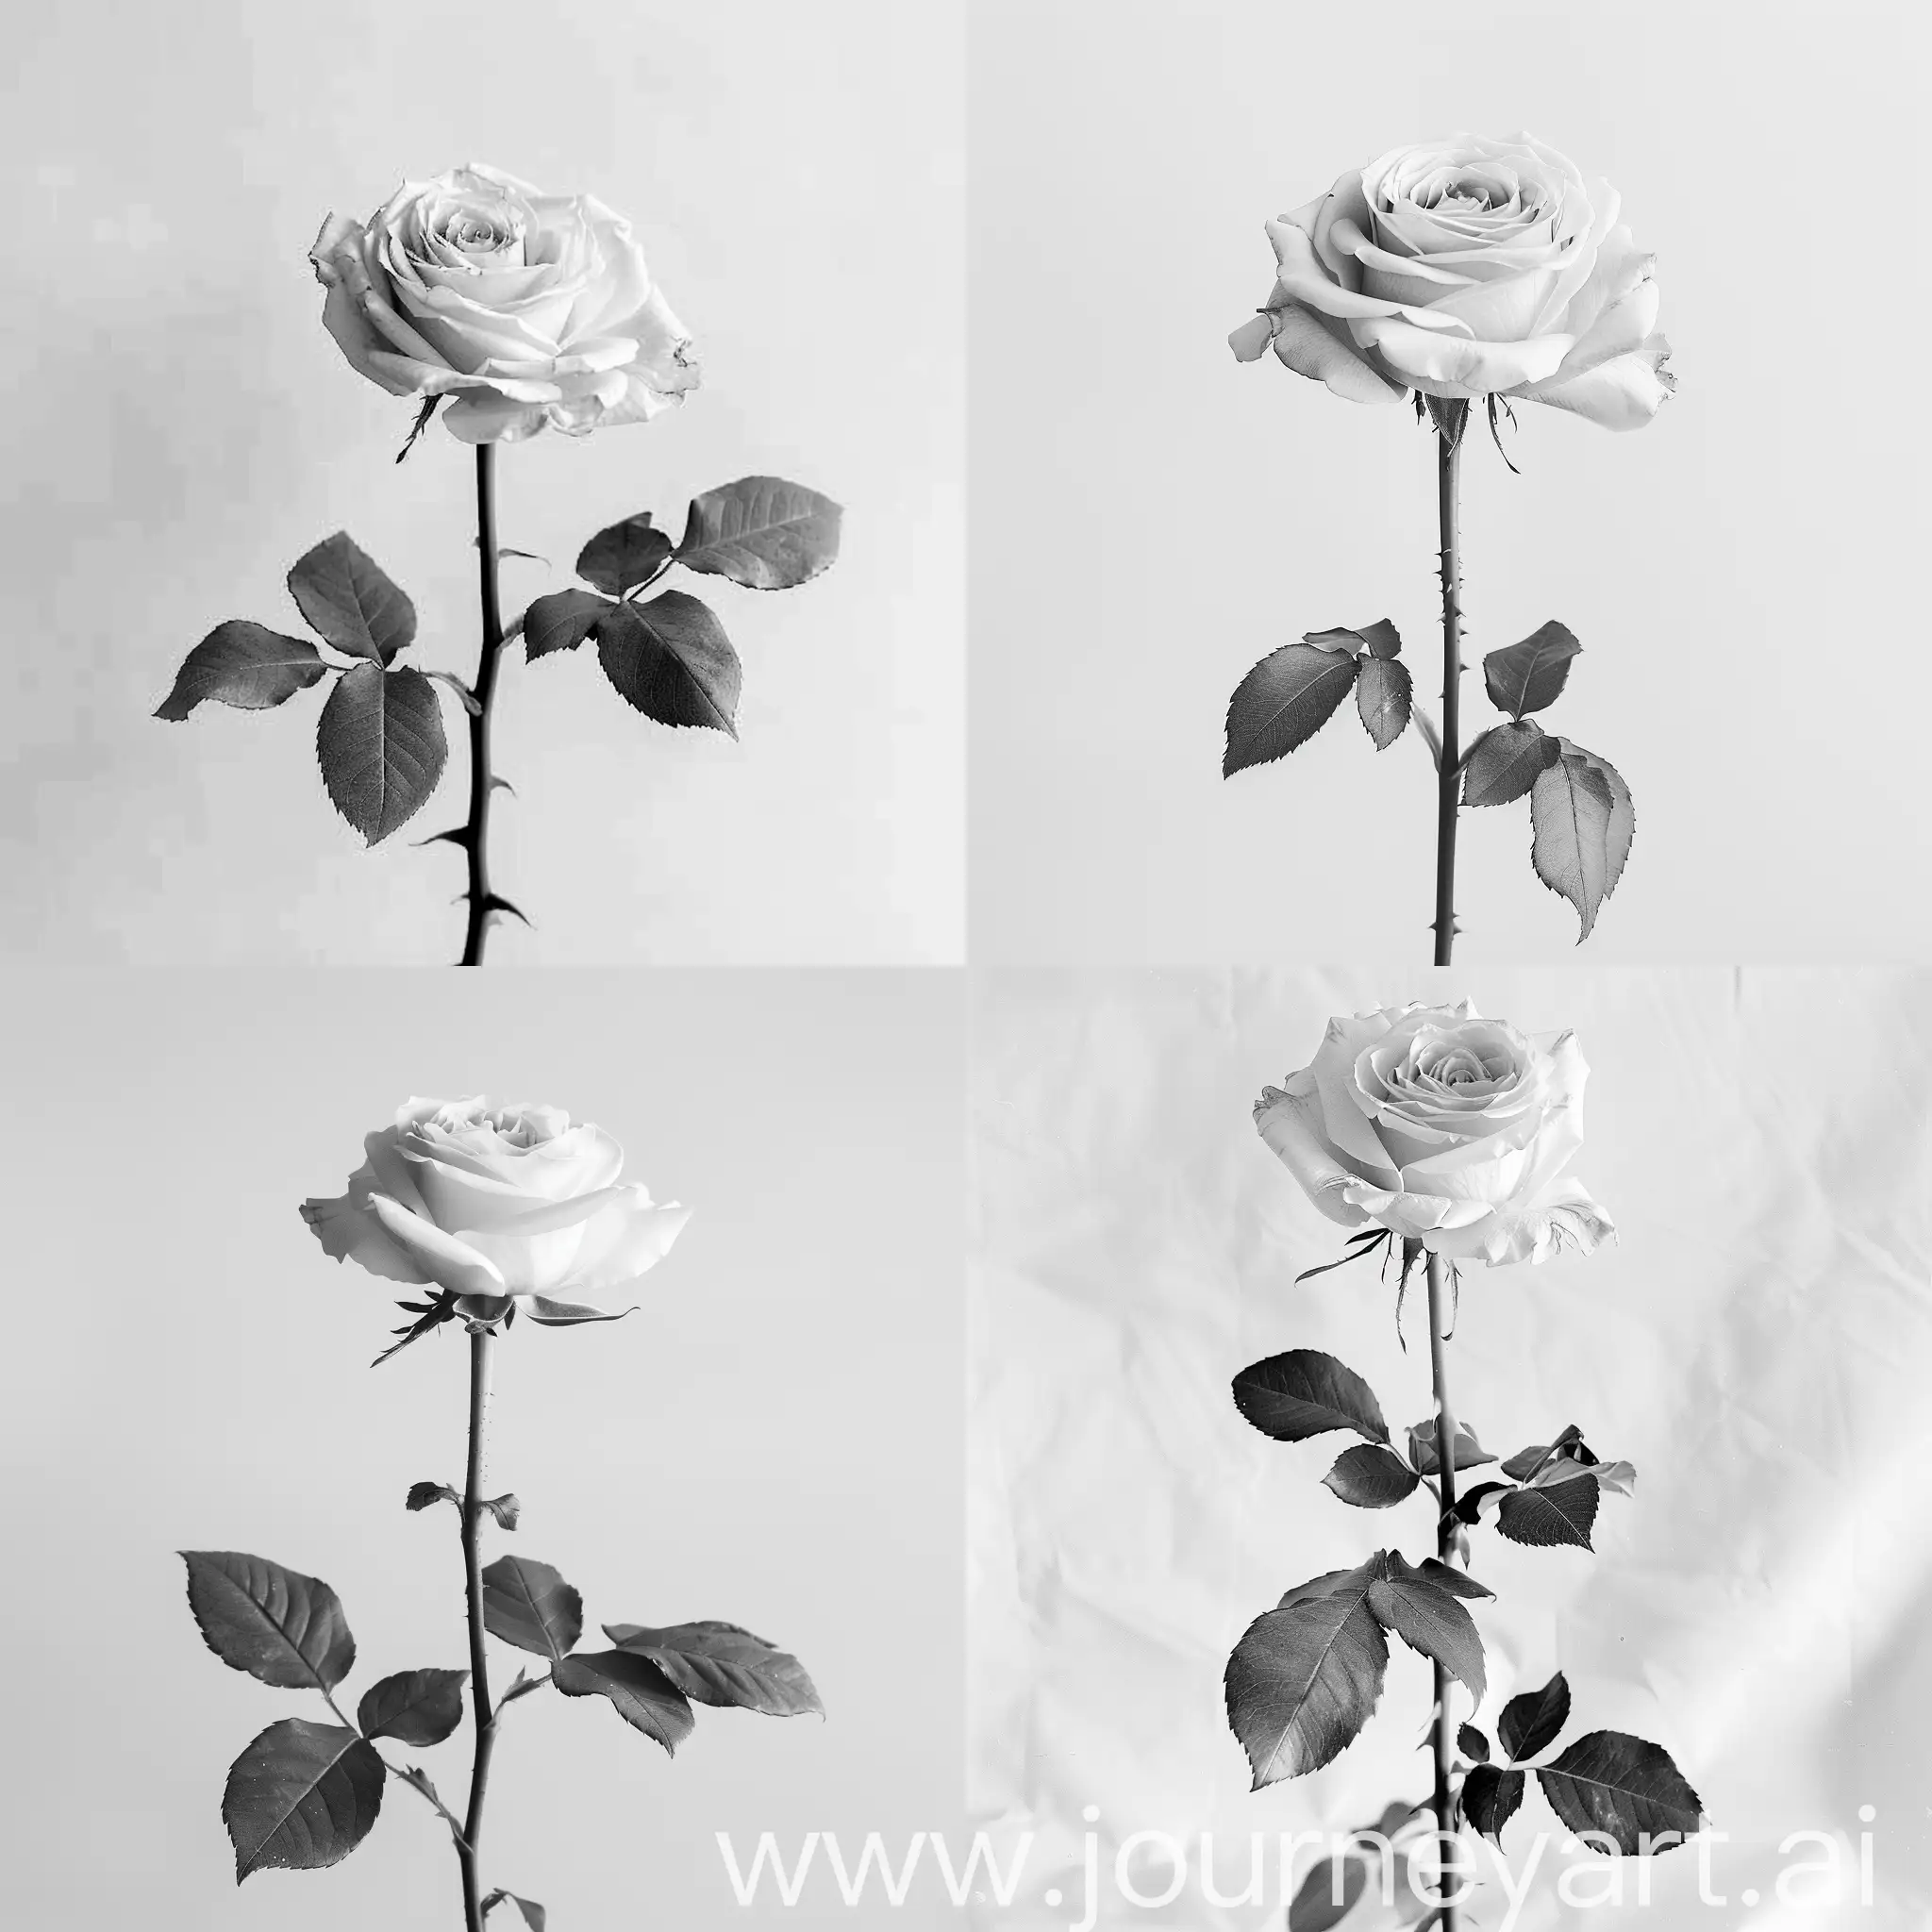 Elegant-White-Rose-on-Stylish-Black-and-White-Magazine-Background